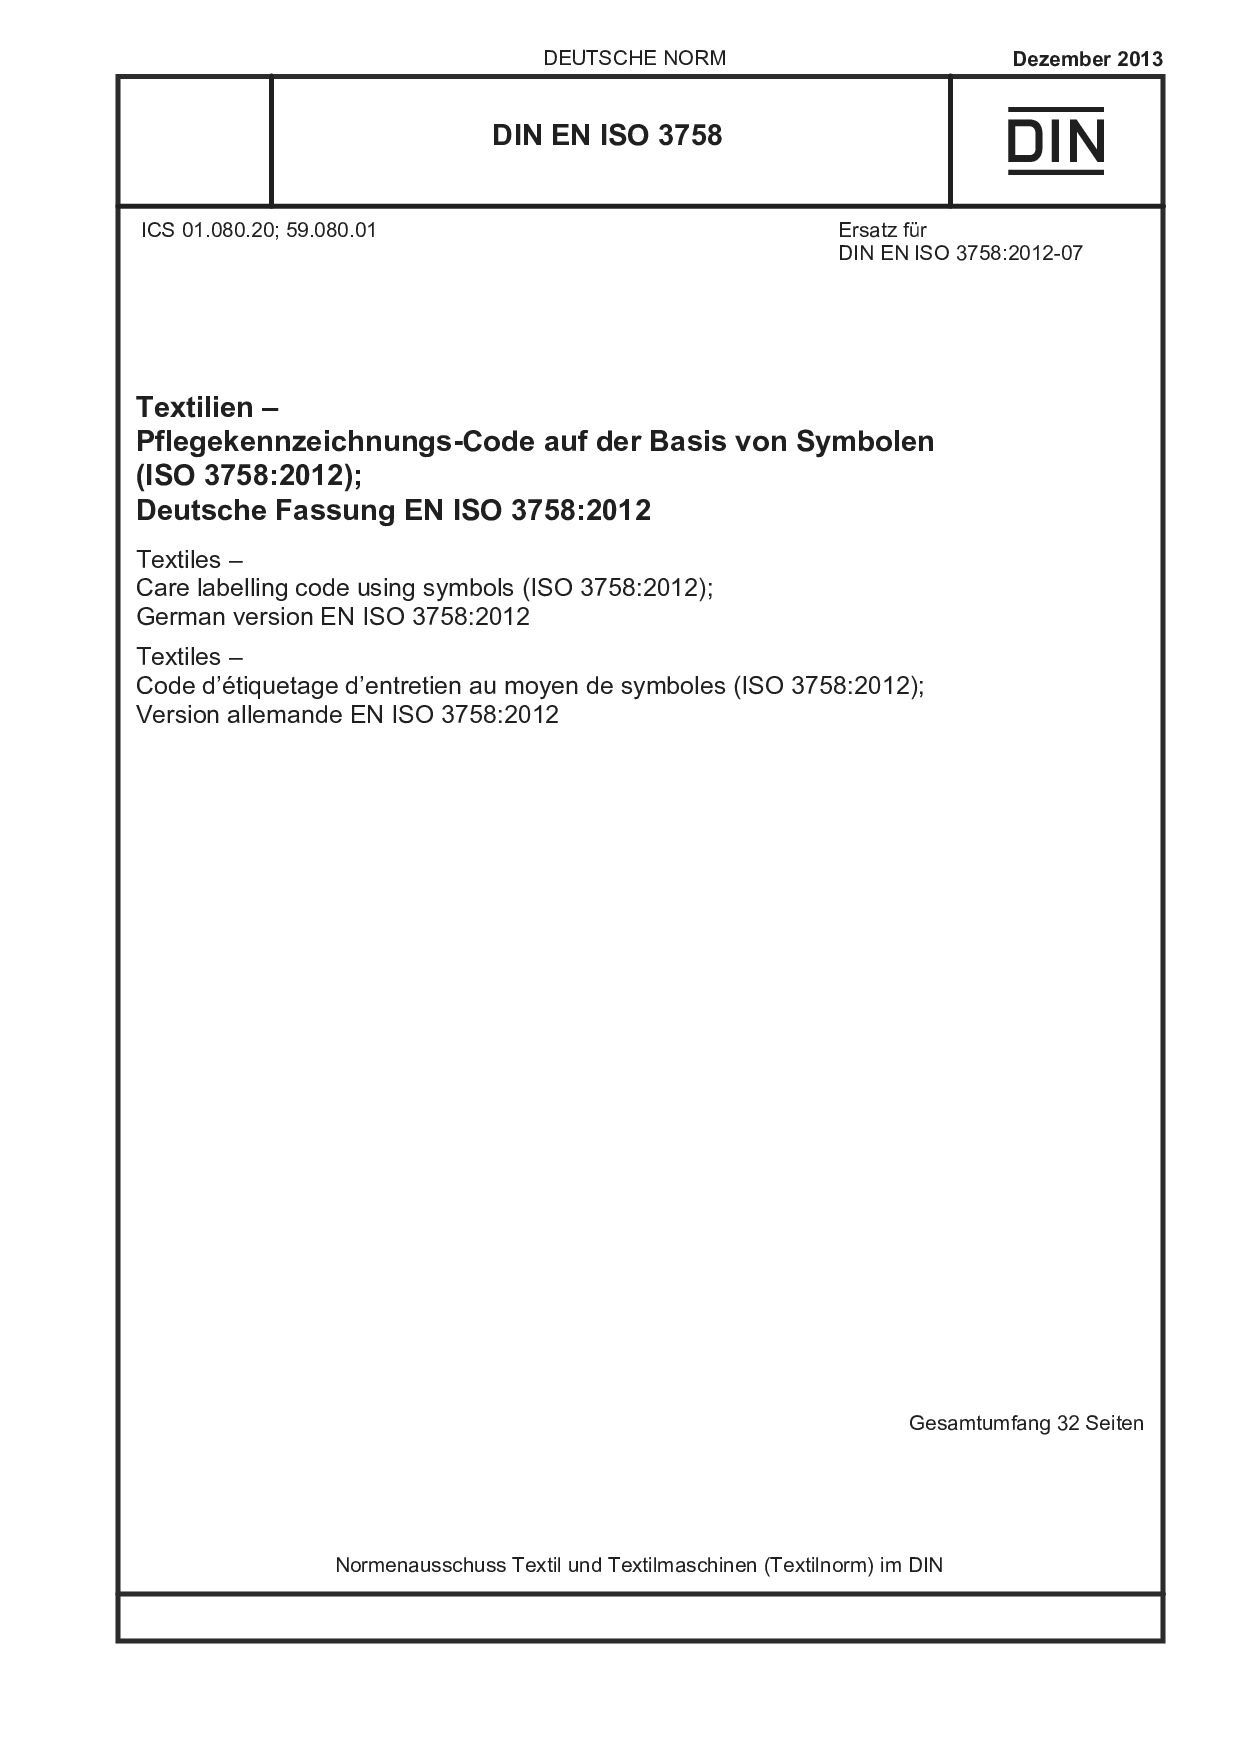 DIN EN ISO 3758:2013